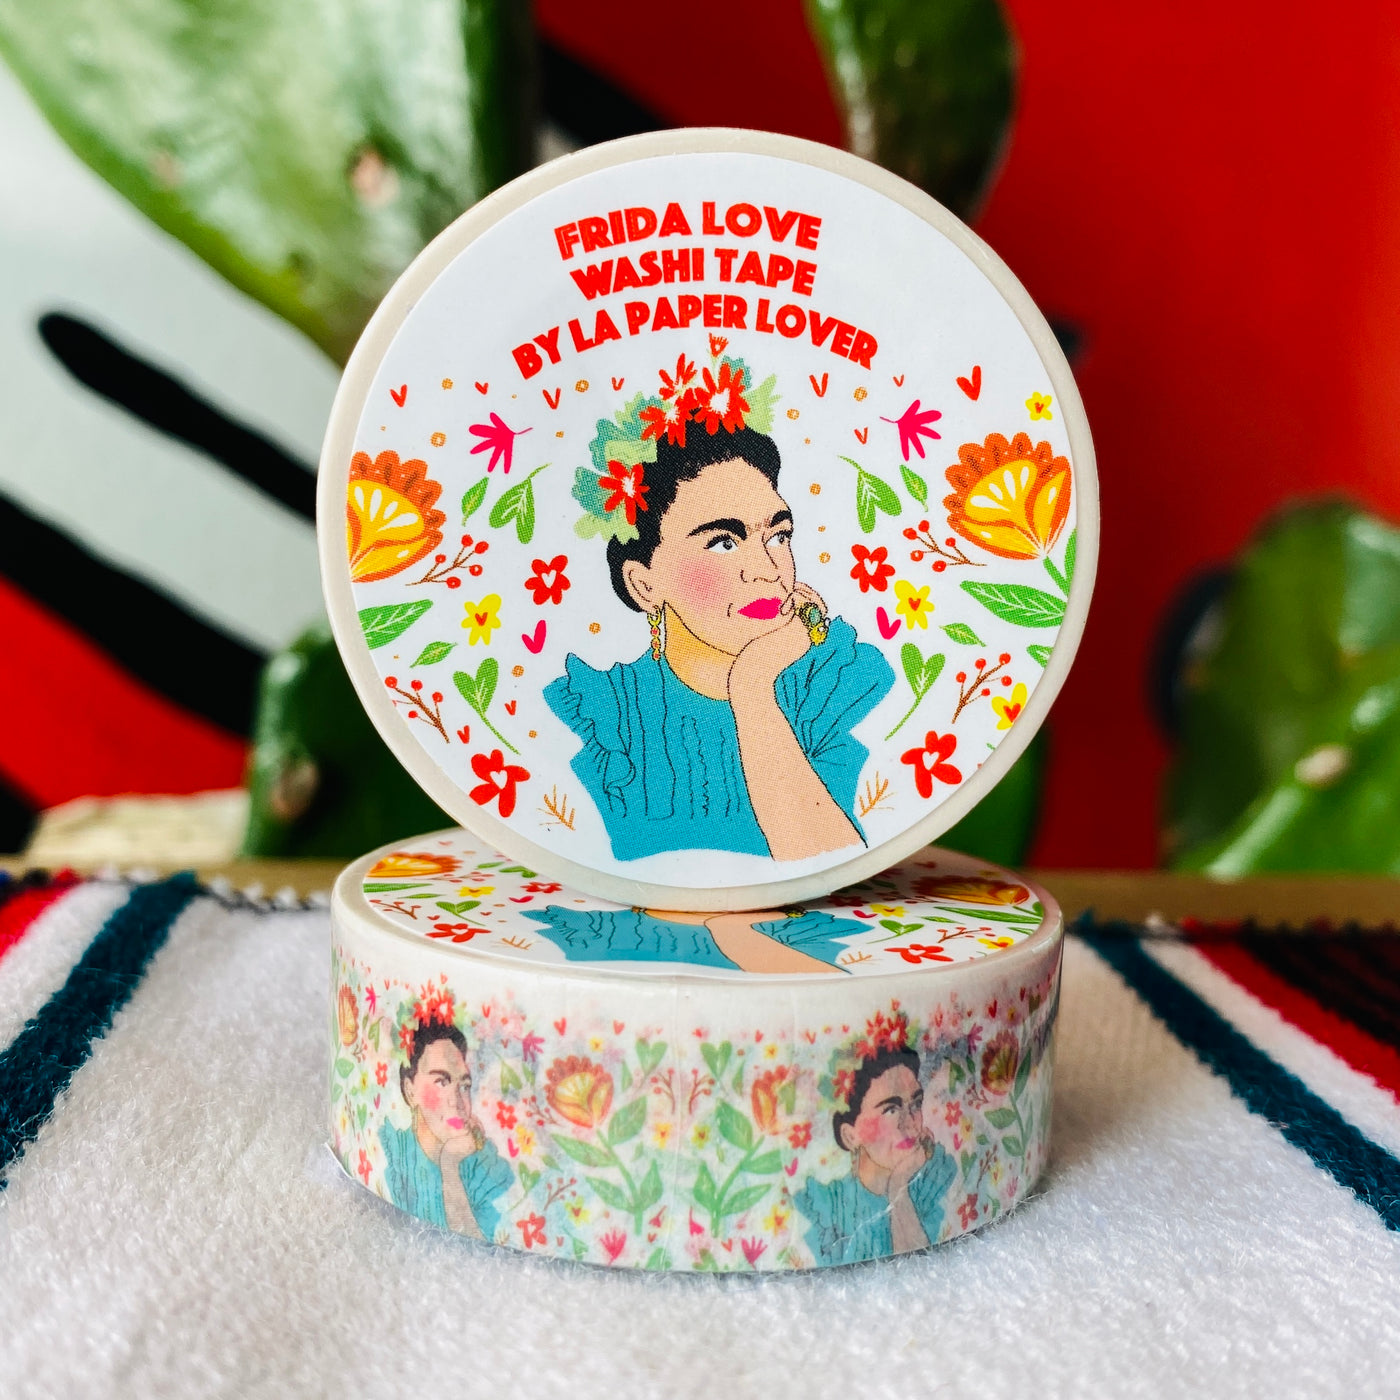 Close up of Frida Kahlo white washi tape.